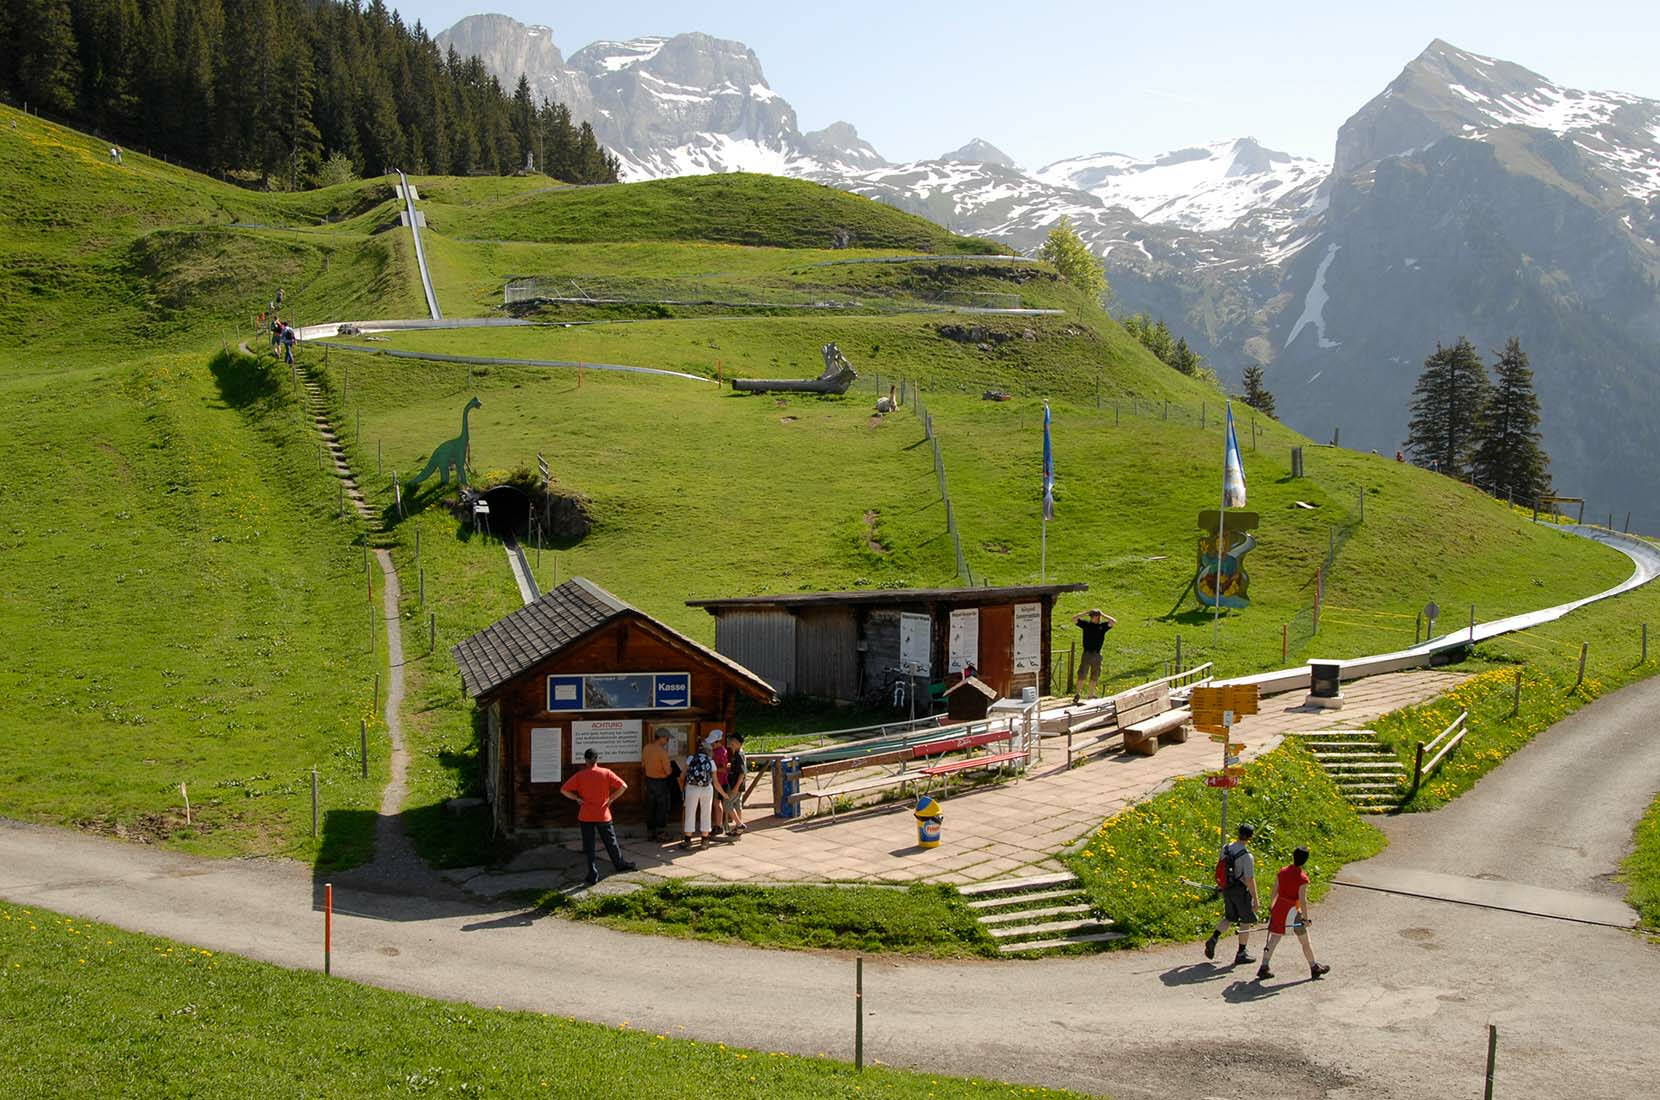 Ein Vergnügen für gross und klein ist die Sommerrodelbahn auf Ristis, direkt neben der Bergstation der Luftseilbahn und dem Bergrestaurant Ristis auf 1600 müM. gelegen. Ihr besonderes Merkmal liegt in der Einbettung in eine herrliche Landschaft inmitten blühender Alpenblumen und einem wunderschönen Bergpanorama.